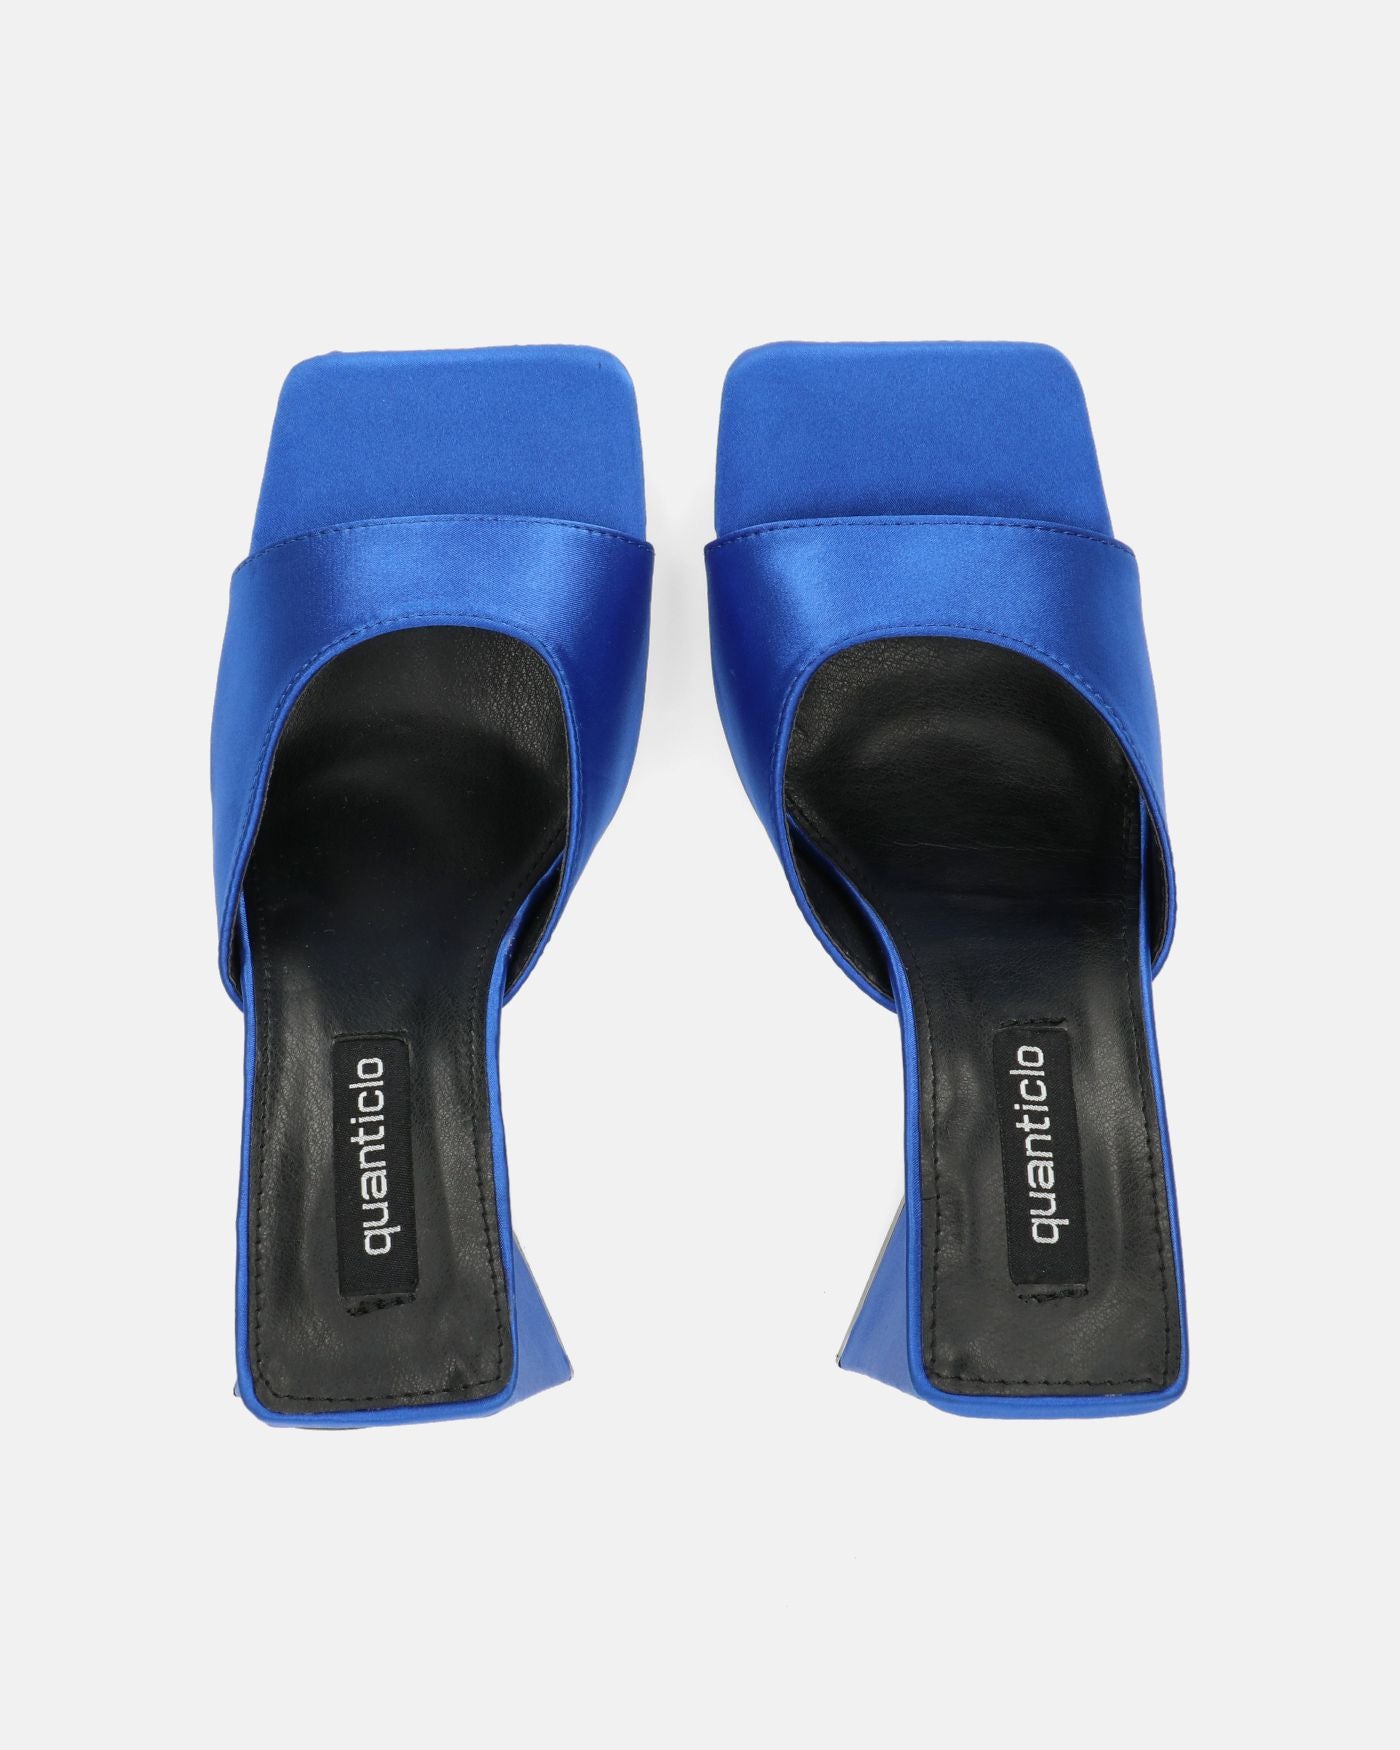 MILEY - sandalias de raso azul con tacón cuadrado